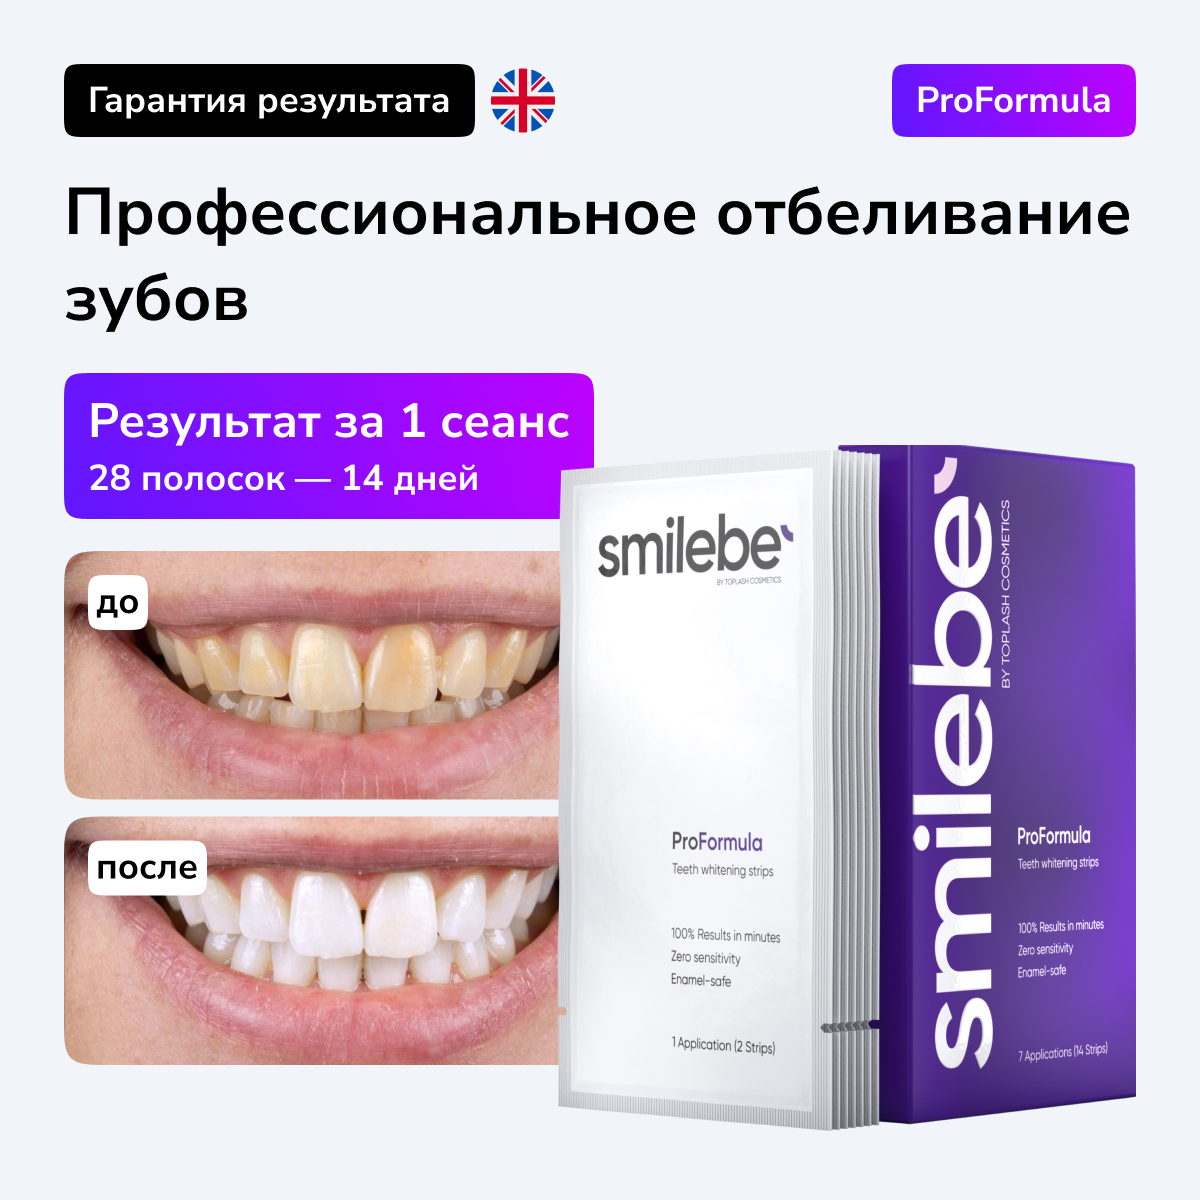 Отбеливающие полоски для зубов Smilebe Teath Whittening ctrips ProFormula 28 шт